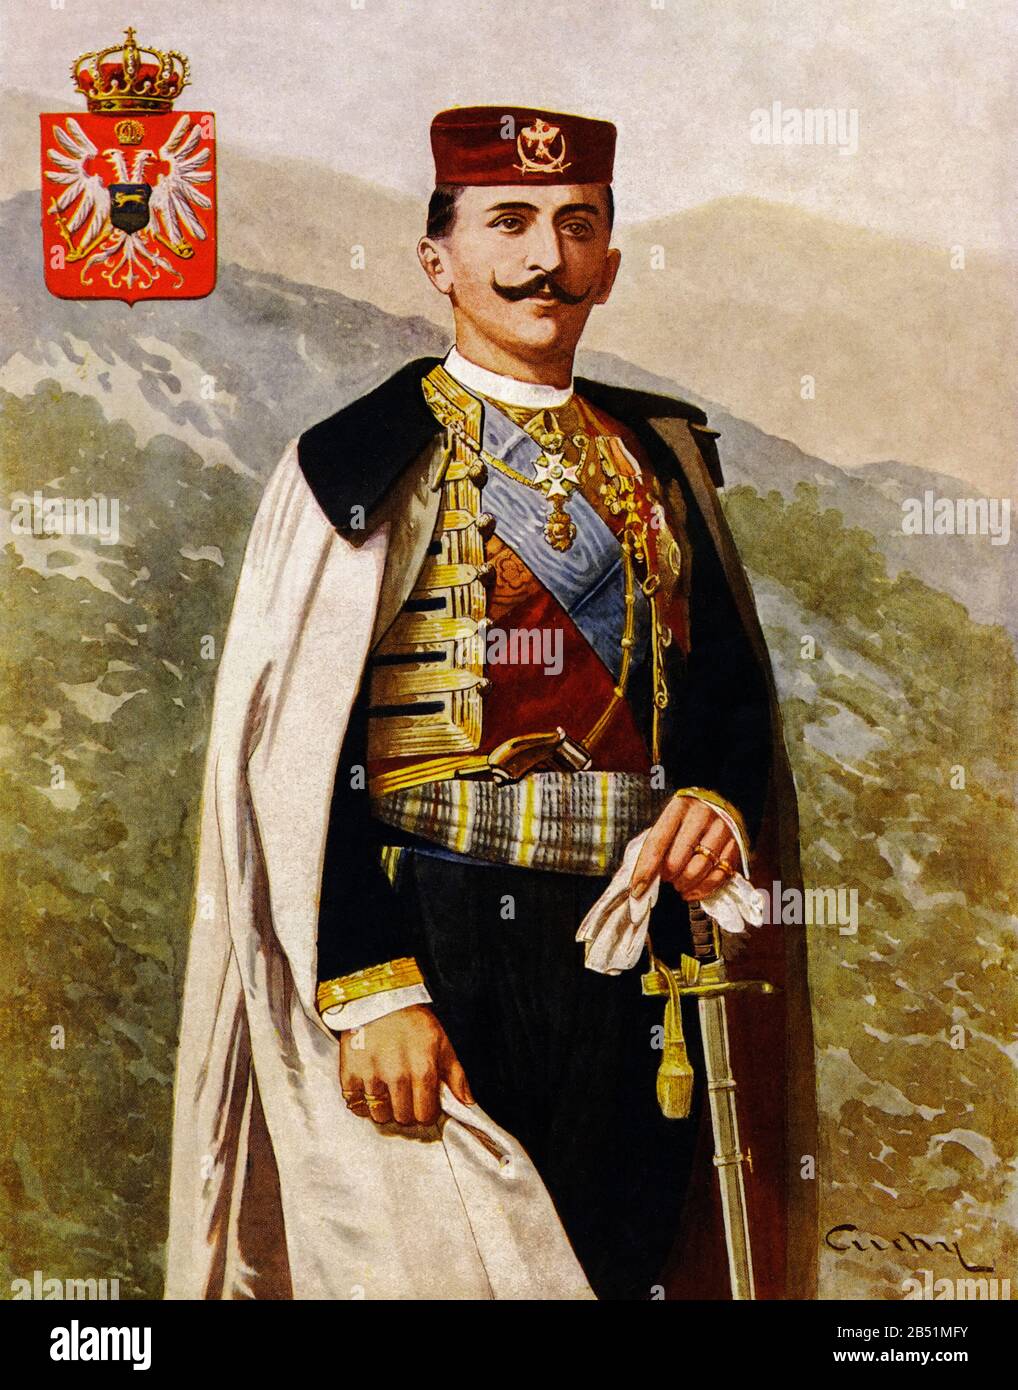 Ritratto a colori del Principe Mirko Dimitri Petrović-Njegoš del Montenegro (1879 - 1918), secondo figlio del Re Nicola i del Montenegro e di Milena Vukotić. Pr Foto Stock